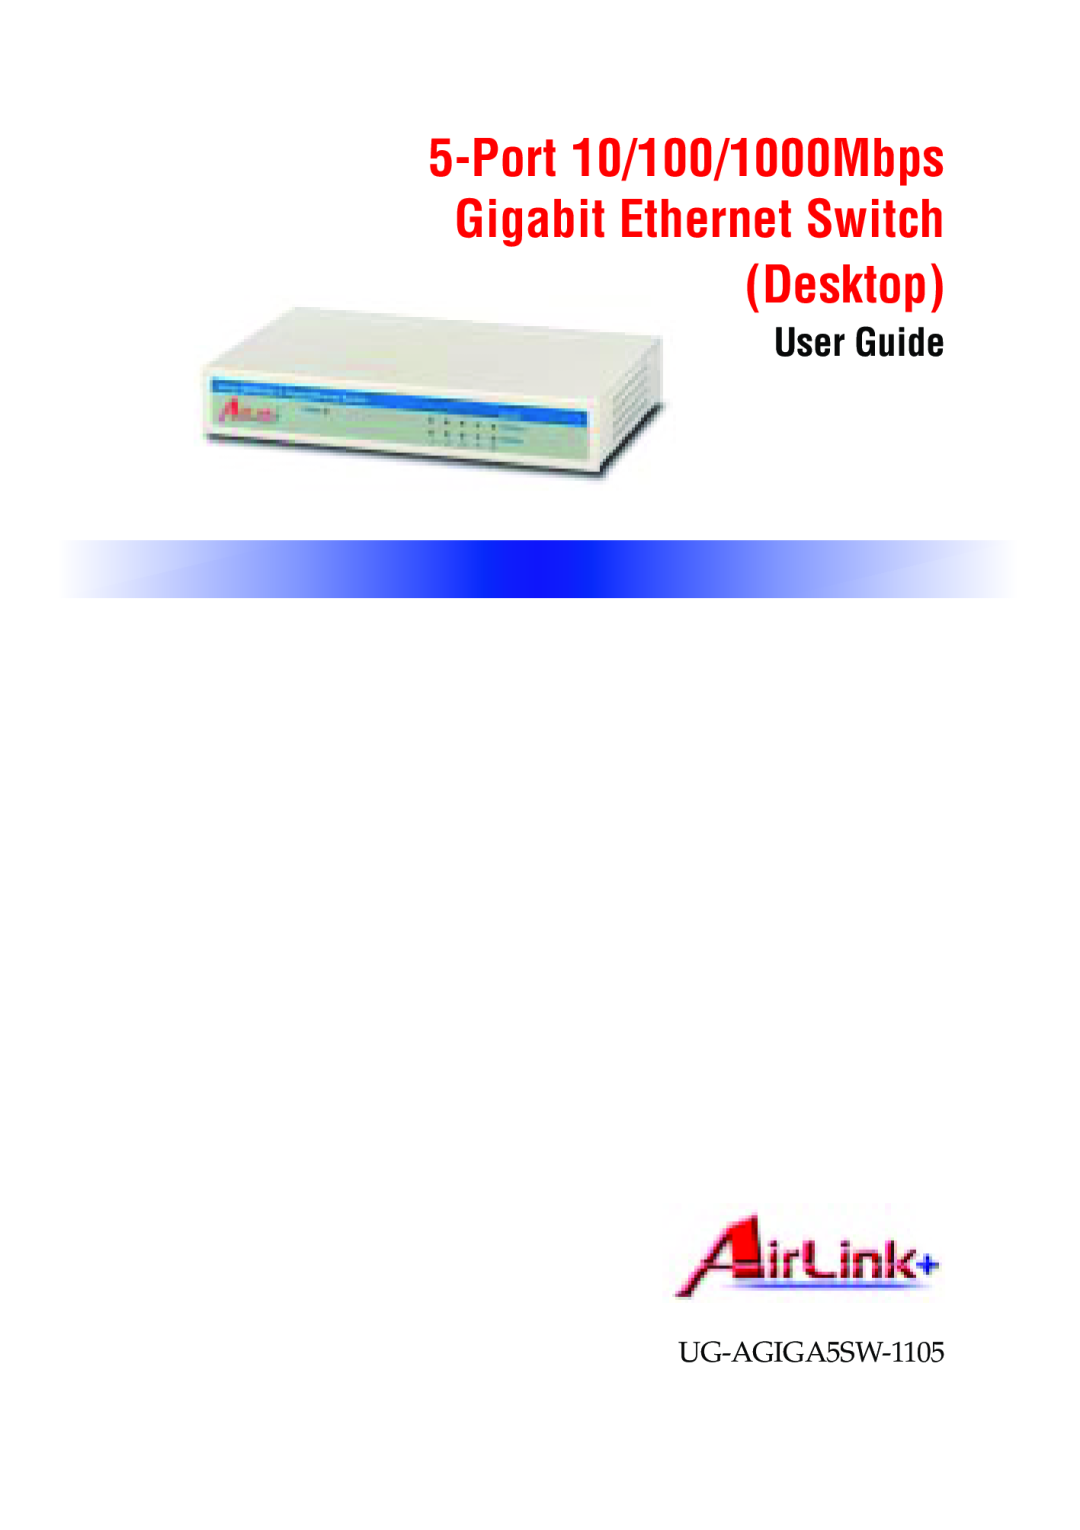 Airlink 5-Port manual Port 10/100/1000Mbps Gigabit Ethernet Switch Desktop, User Guide, AirLink+ 